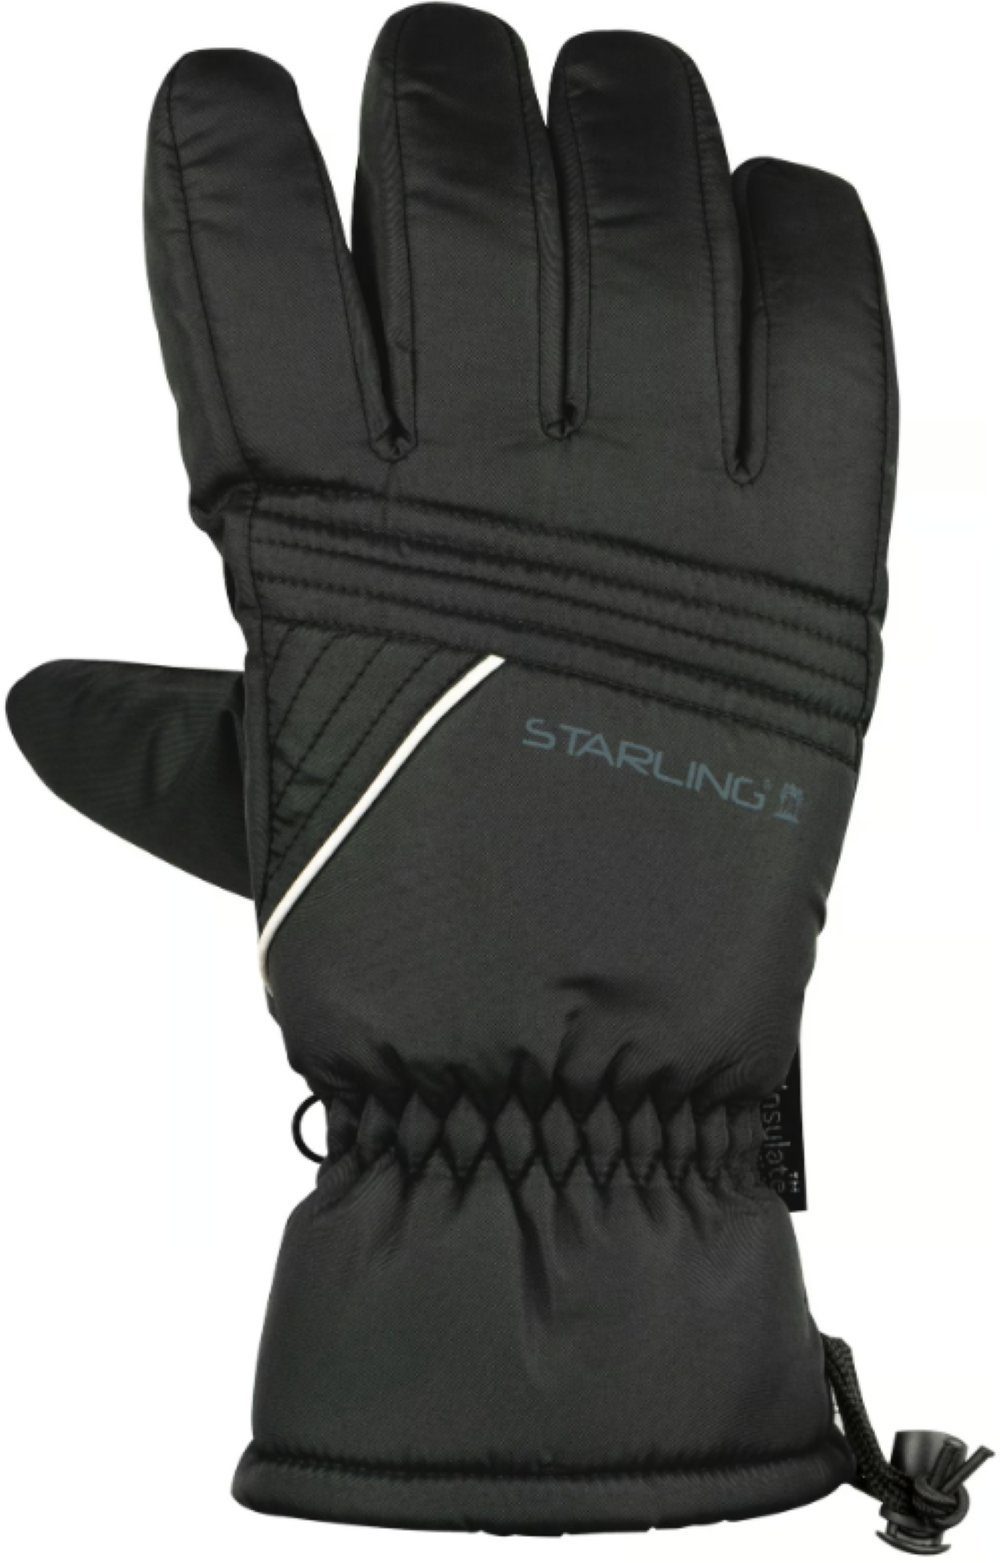 STARLING Skihandschuhe 3M Snowboard-Handschuhe Herren • Größe 9 •Thinsulate Wärme-Isolation